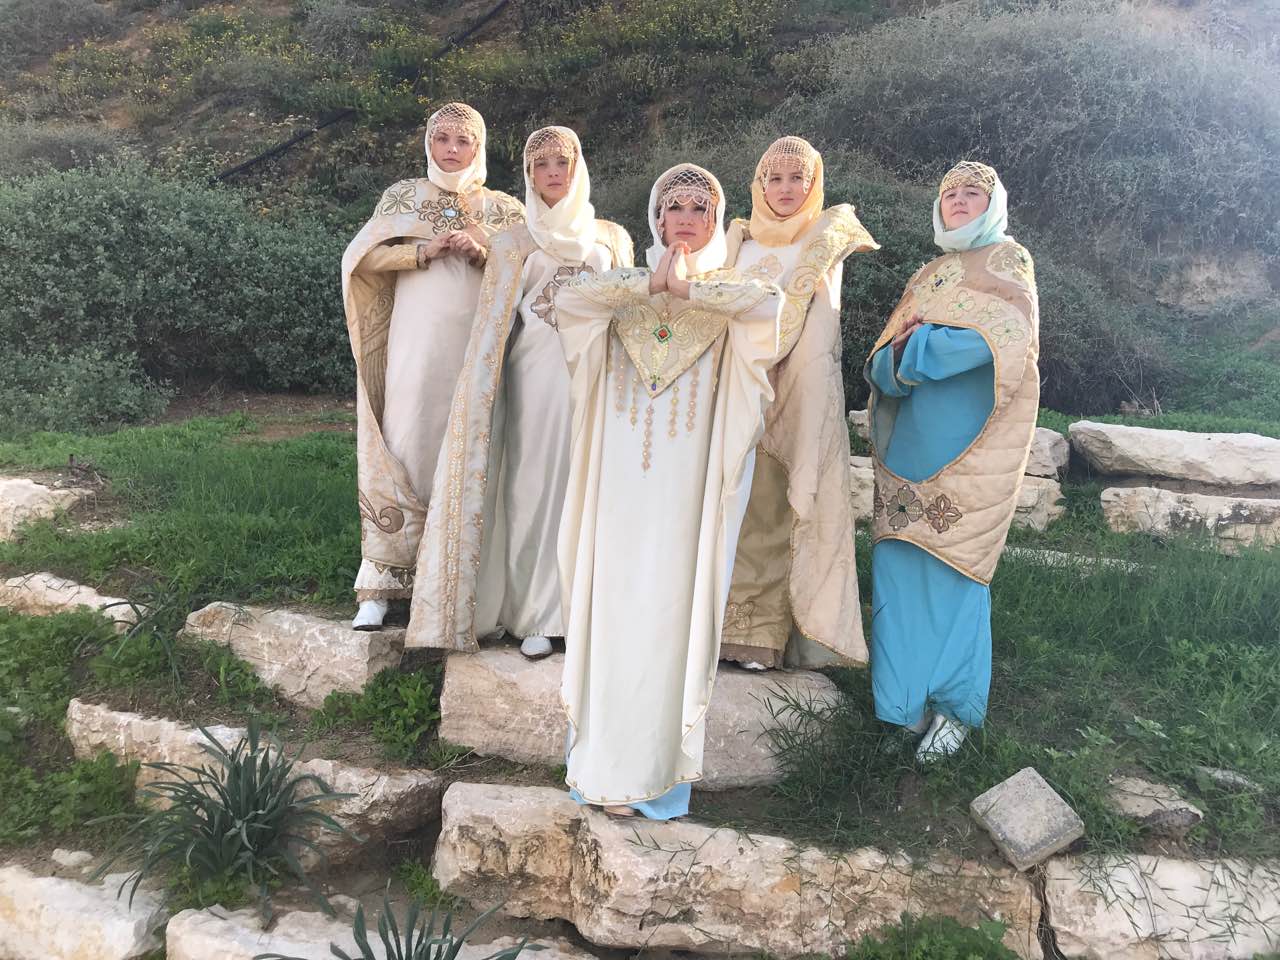 Студия моды “Глория” представила в Израиле исторические костюмы проекта «Новолетие», посвященного 2000-летию крещения Руси